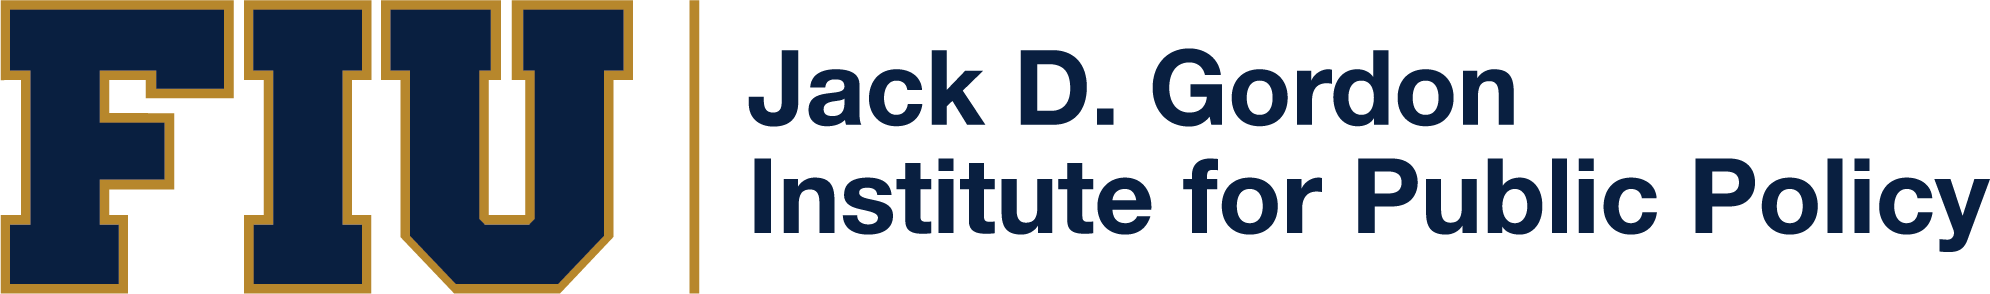 FIU Jack D. Gordan Institute for Public Policy